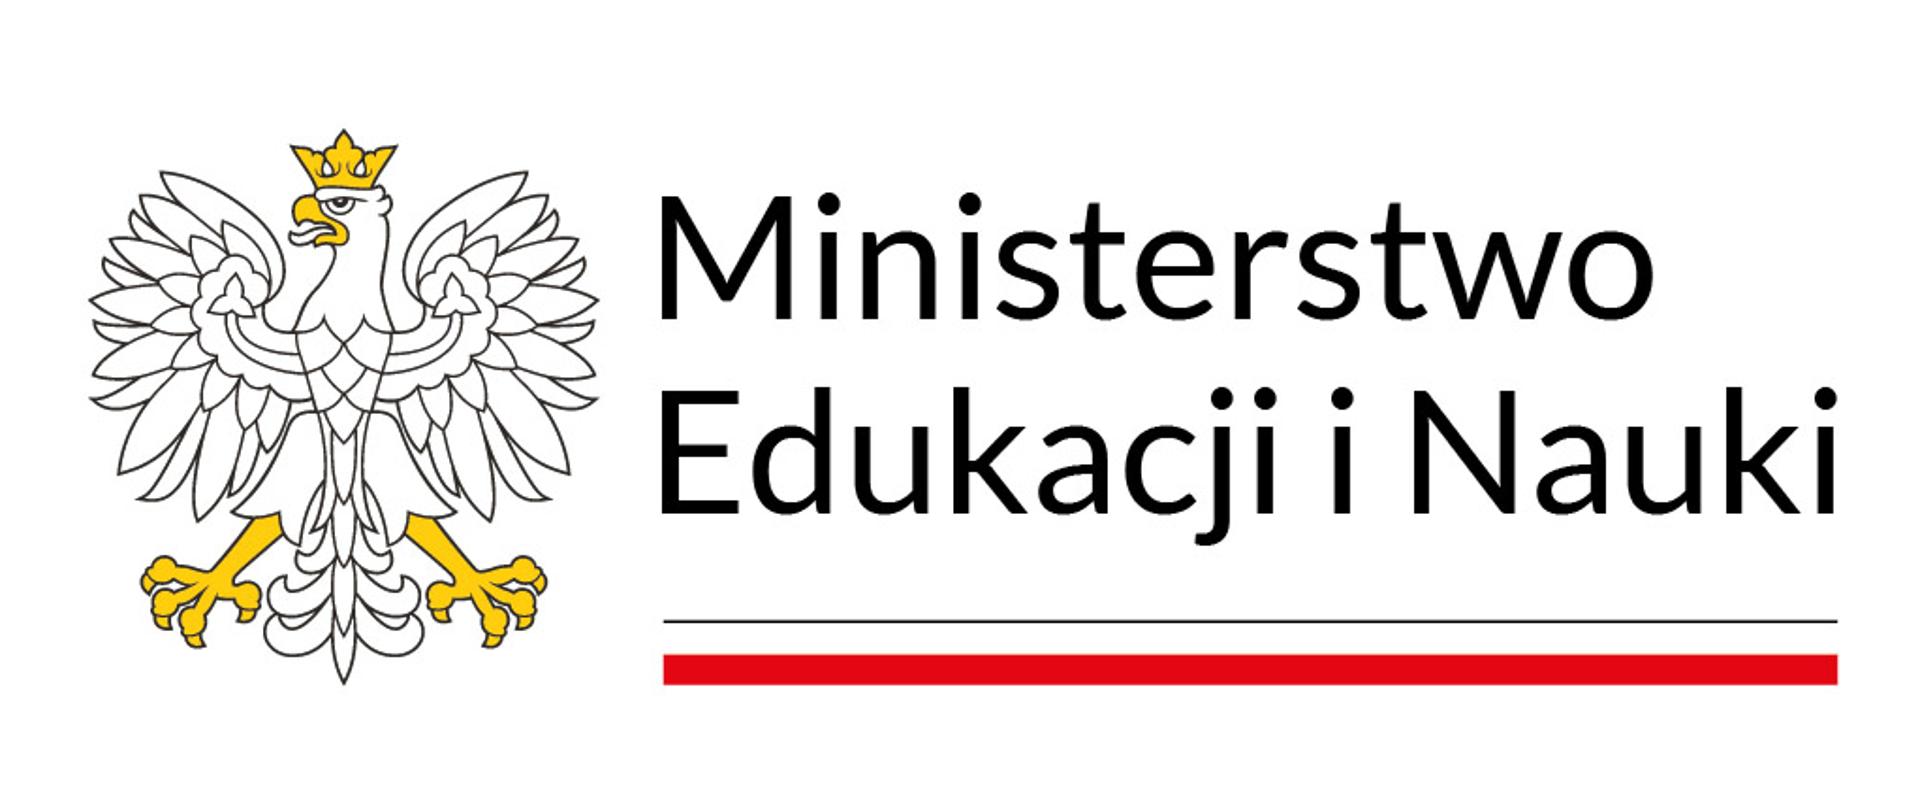 Baner Ministerstwa Edukacji i Nauki na białym tle po lewej stronie orzeł w koronie po prawej stronie napis Ministerstwo Edukacji i Nauki pod napisem symbol biało-czerwonej flagi